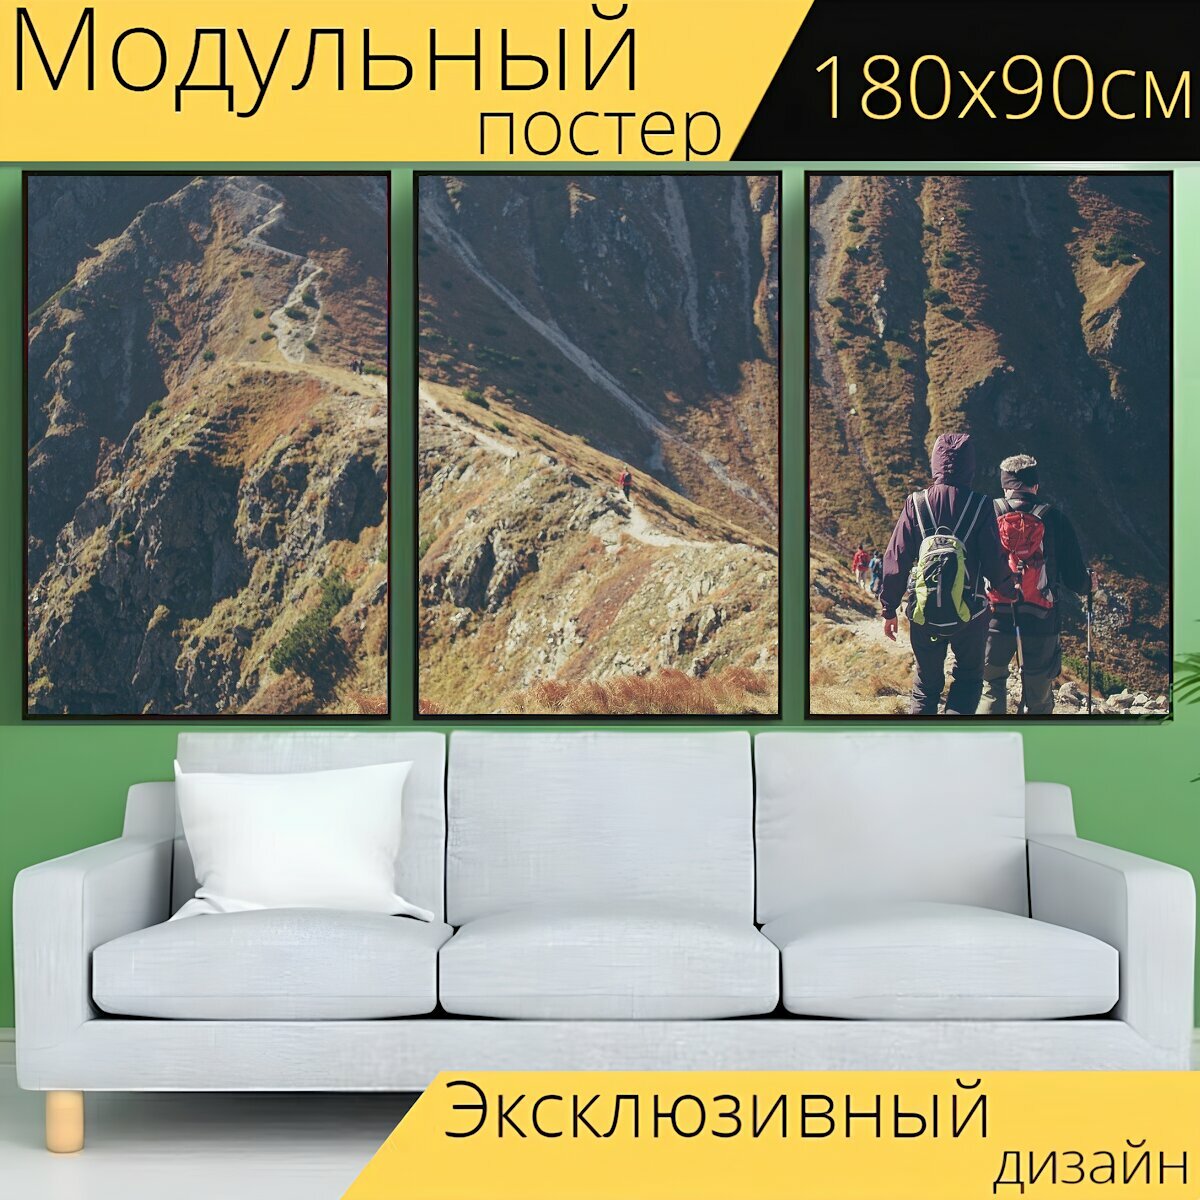 Модульный постер "Пеший туризм, альпинизм, альпинист" 180 x 90 см. для интерьера